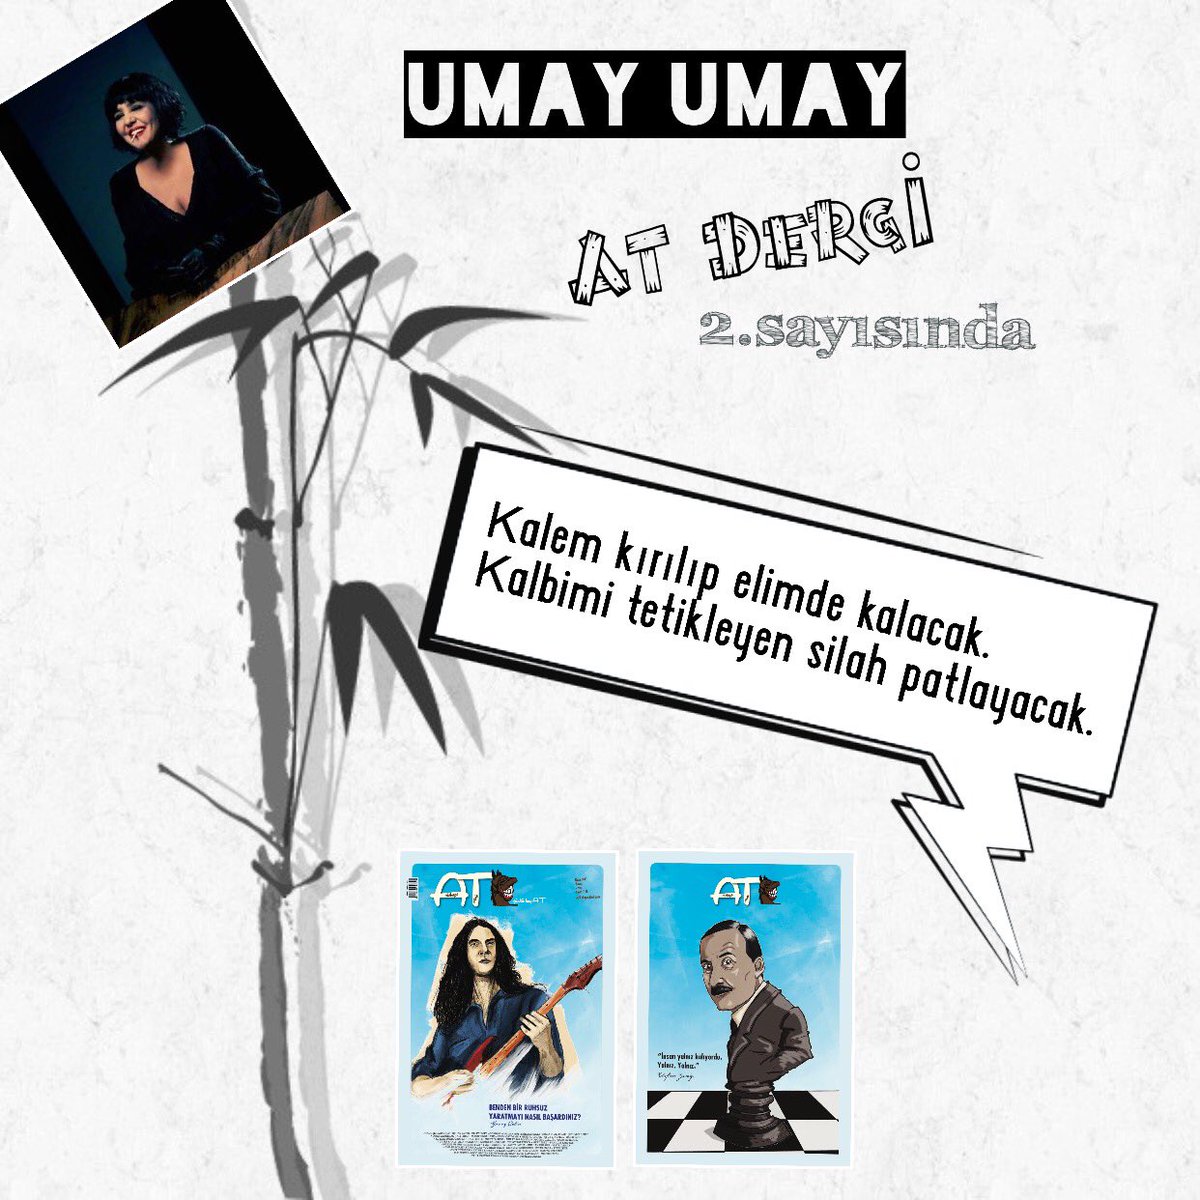 Umay Umay AT Dergi 2. sayısında.

#ATDergi
#UmayUmay